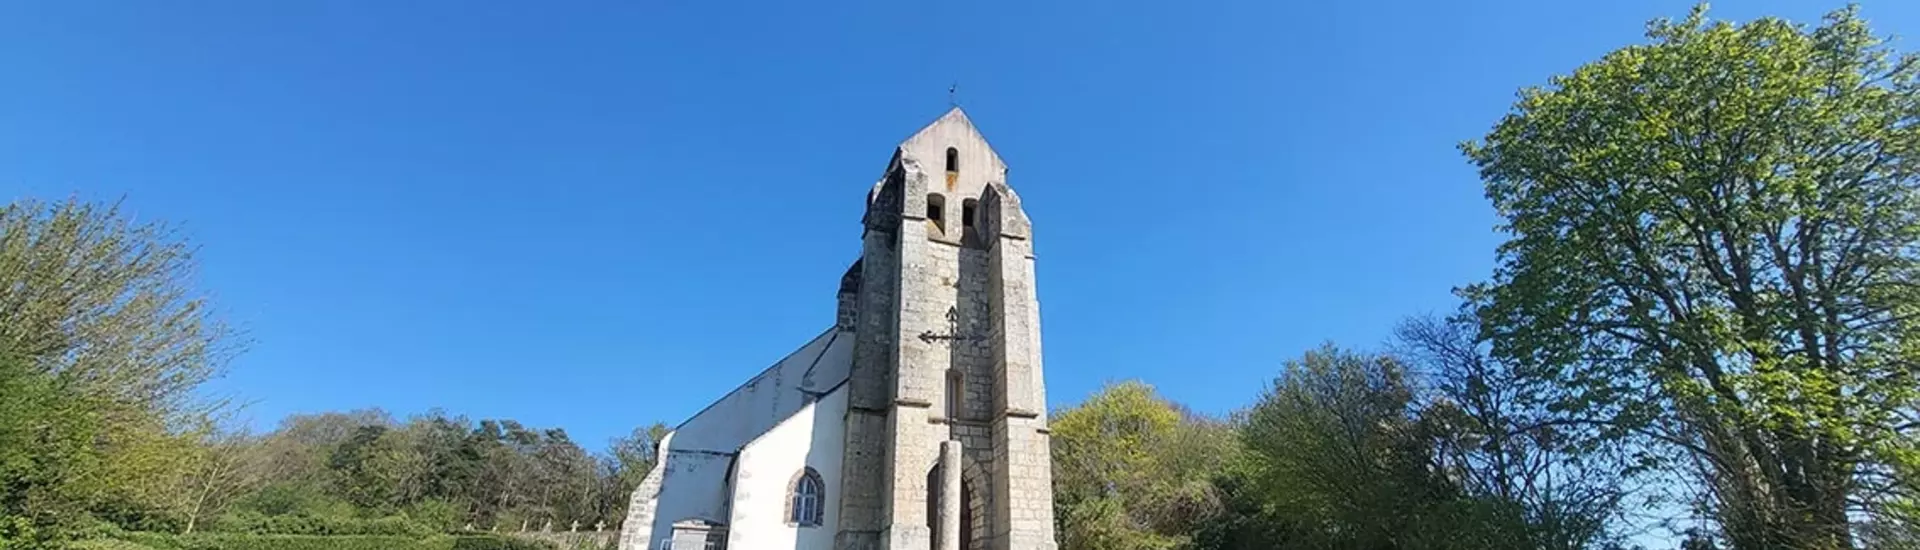 L’église Saint-Sulpice de Chevannes proches du 15ième siècle